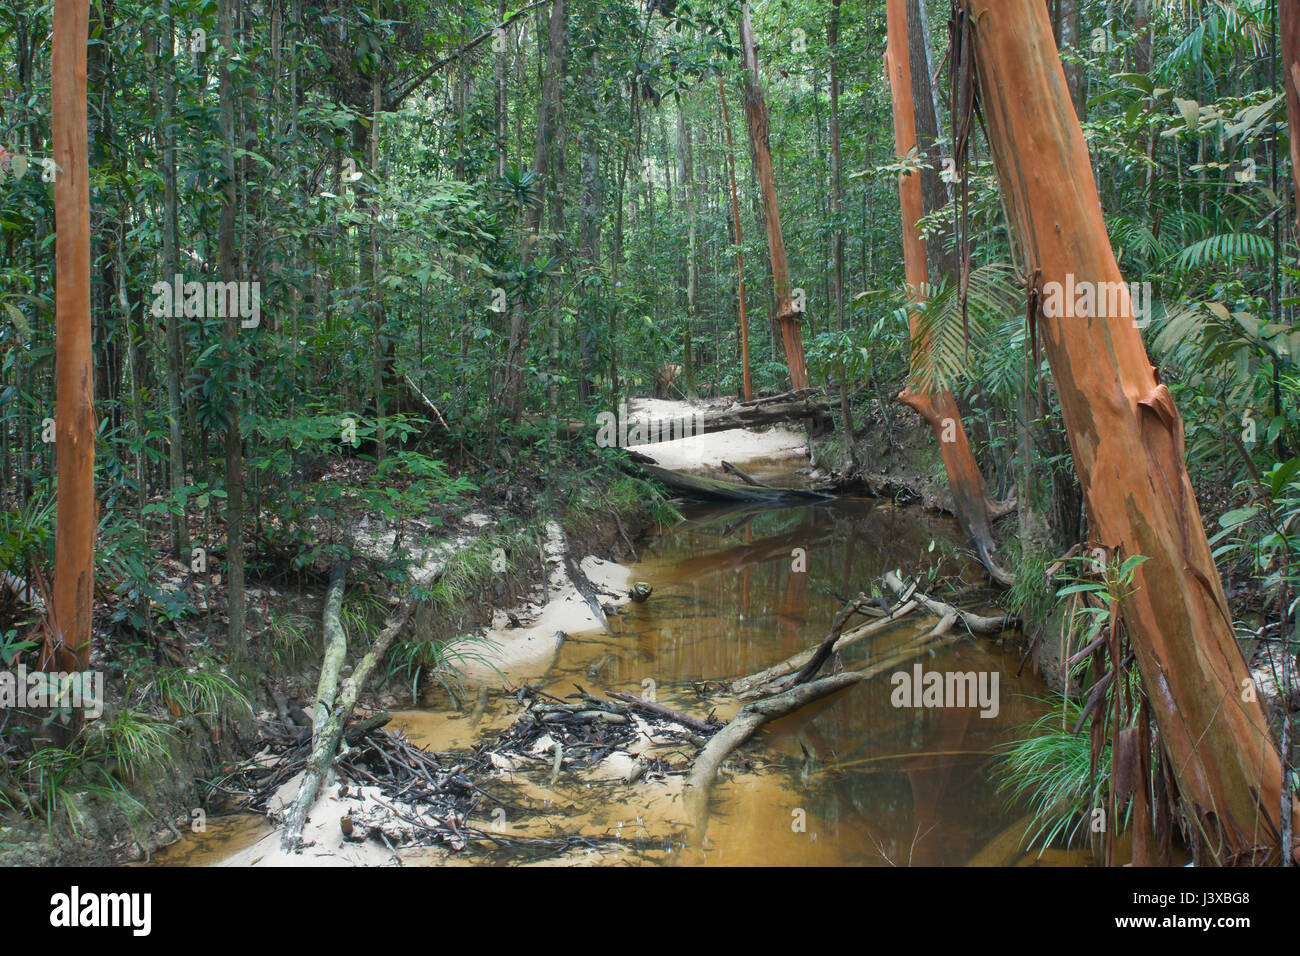 Regenwald-Stream in einem üppigen Dschungel mit Bäumen mit orange Rinde.  Similajau Nationalpark, Sarawak, Malaysia. Stockfoto